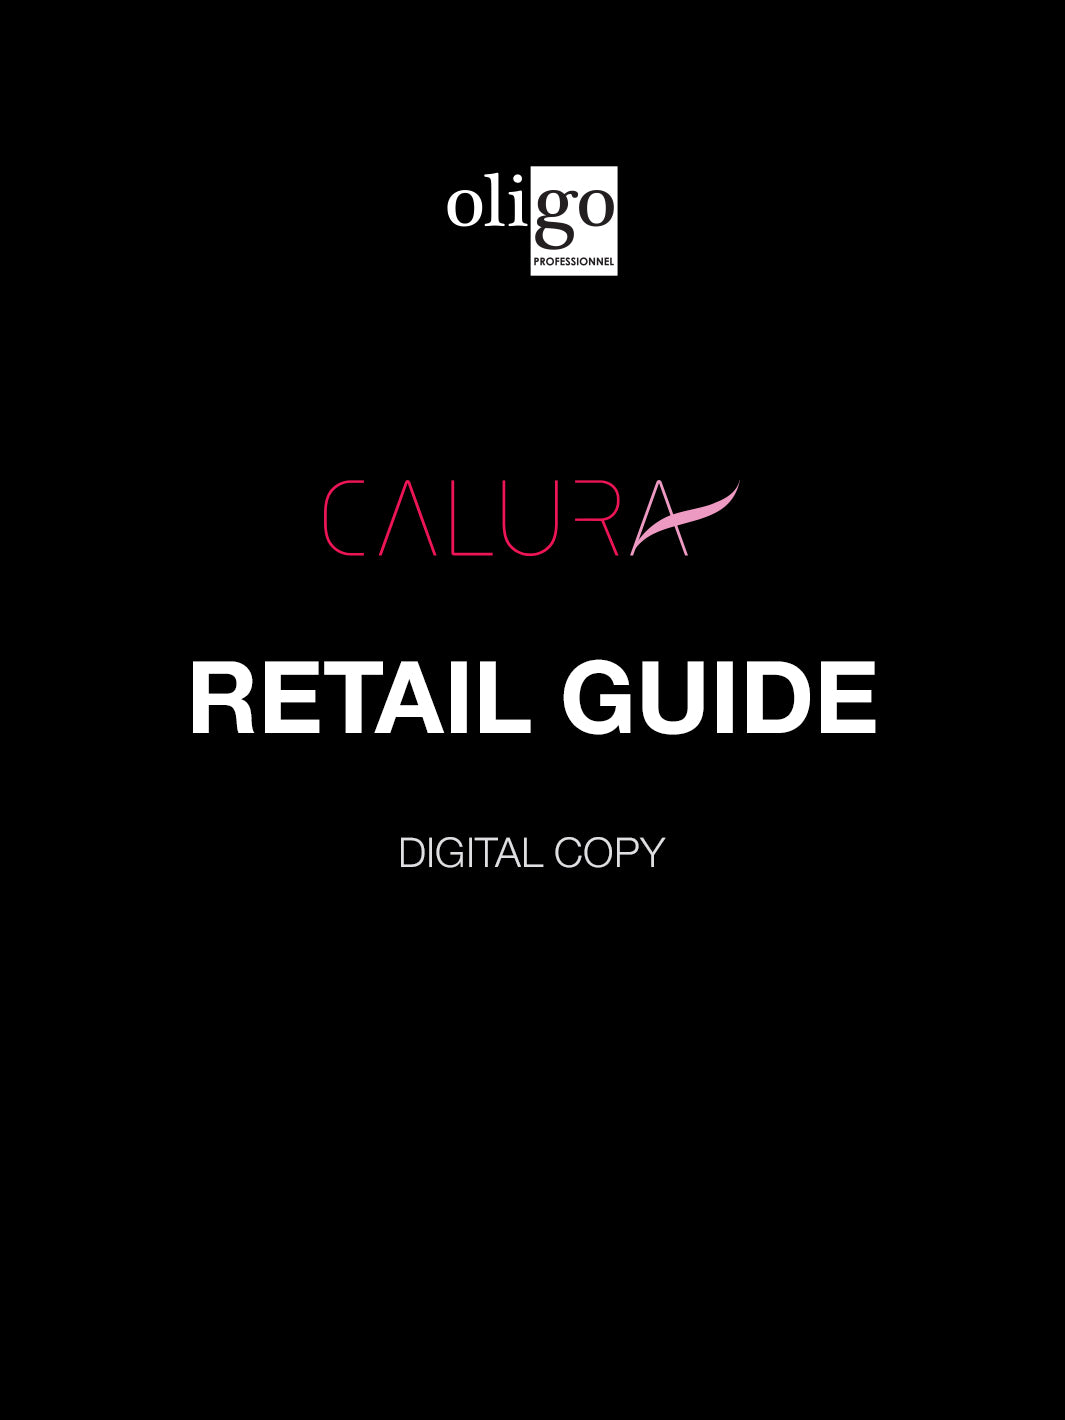 Oligo Calura Retail Product Guide (digital copy)